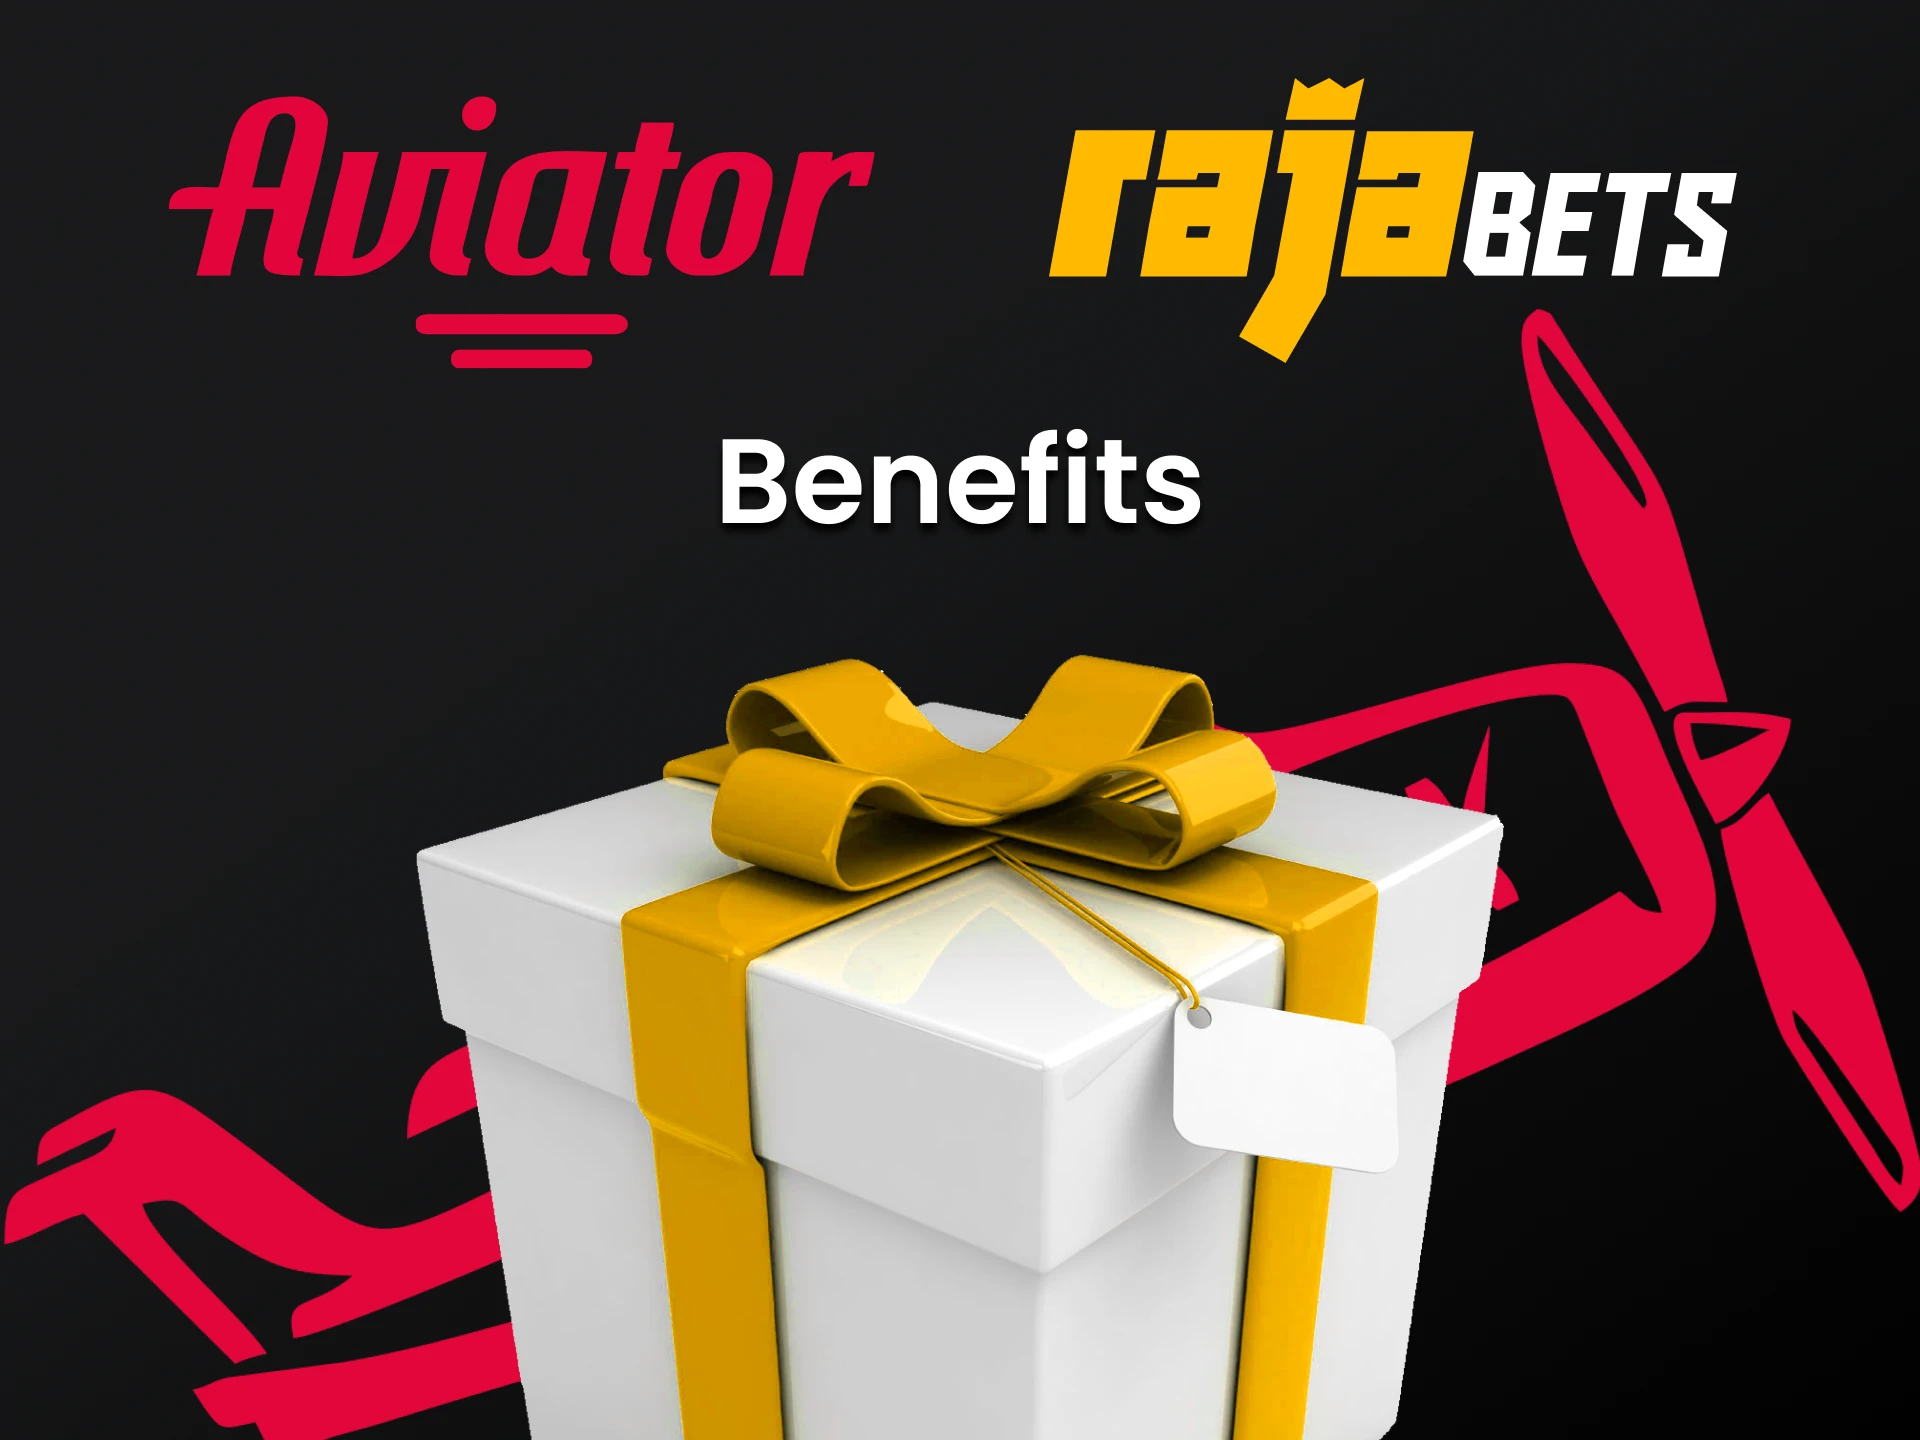 Ao escolher Rajabets, você obterá muitos benefícios.